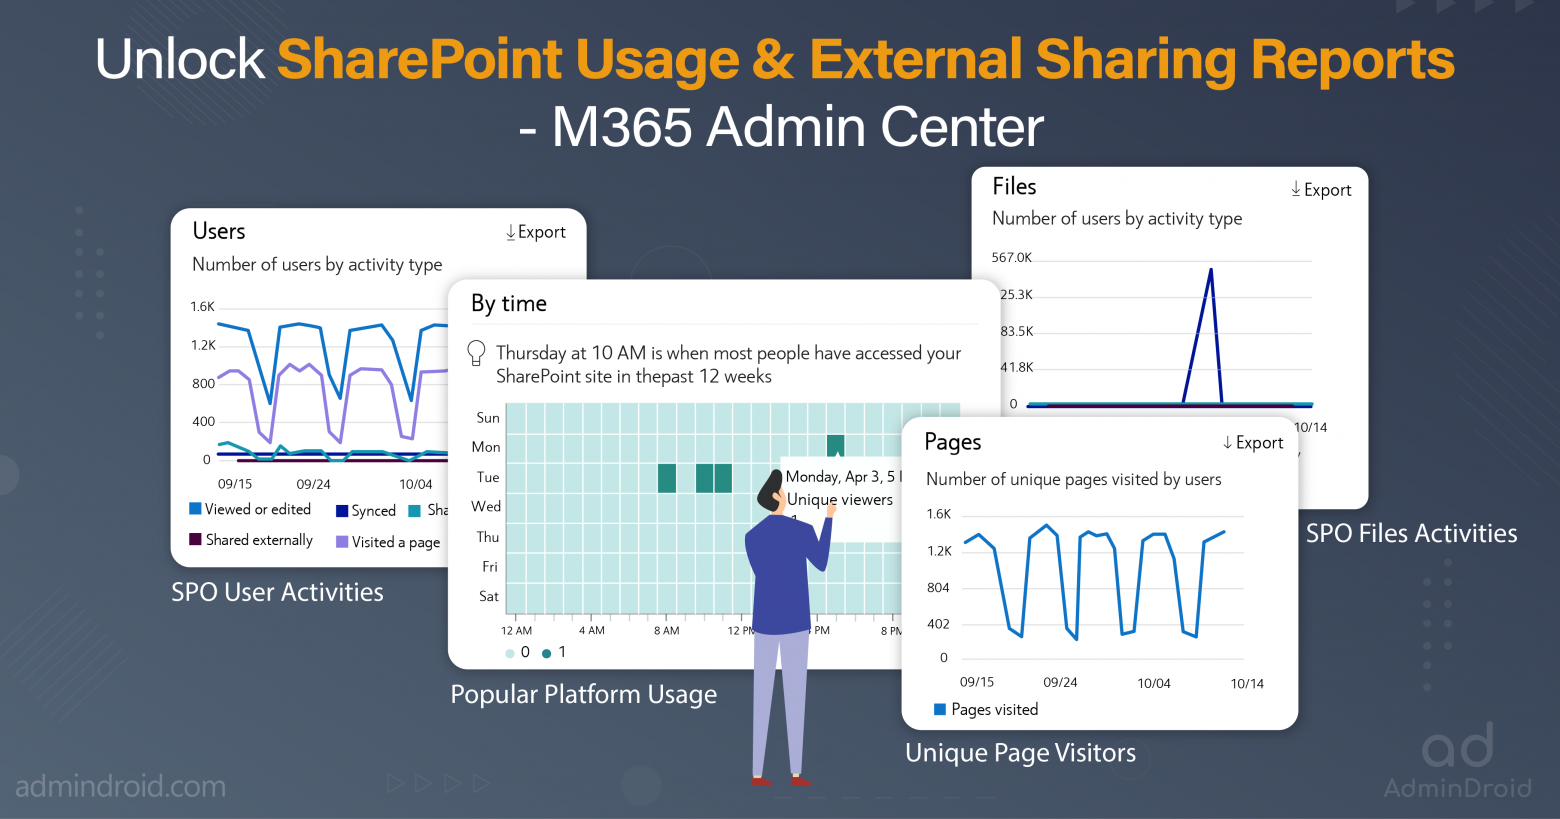 Unlock SharePoint Usage & External Sharing Reports - M365 Admin Center